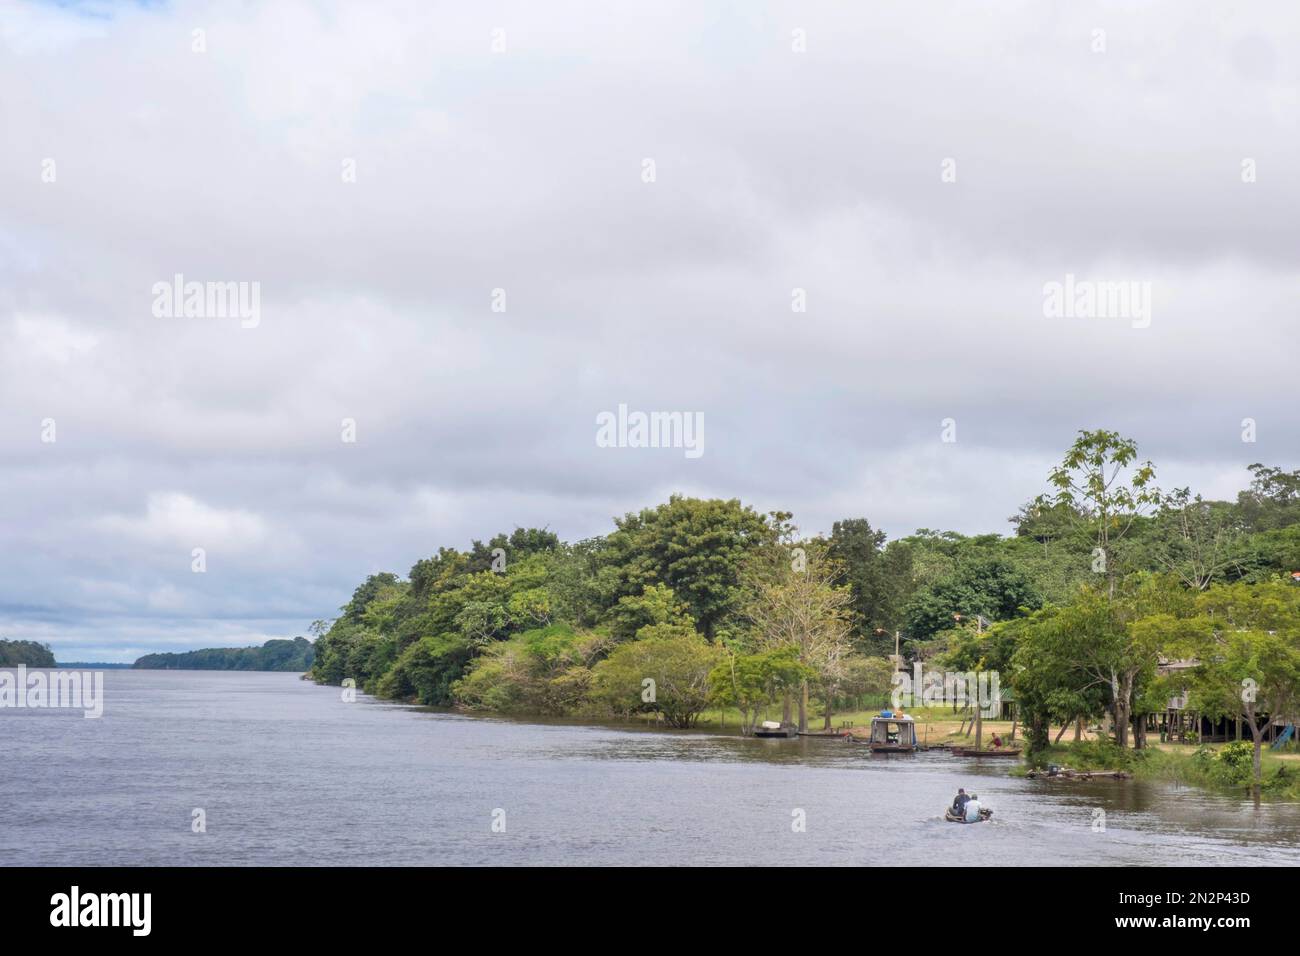 Les habitants arrivent en bateau dans une petite localité sur la partie inférieure de la rivière Demini, au Brésil, en Amazonie, dans le bassin du Rio Negro. Couloir écologique du centre de l'Amazonie Banque D'Images